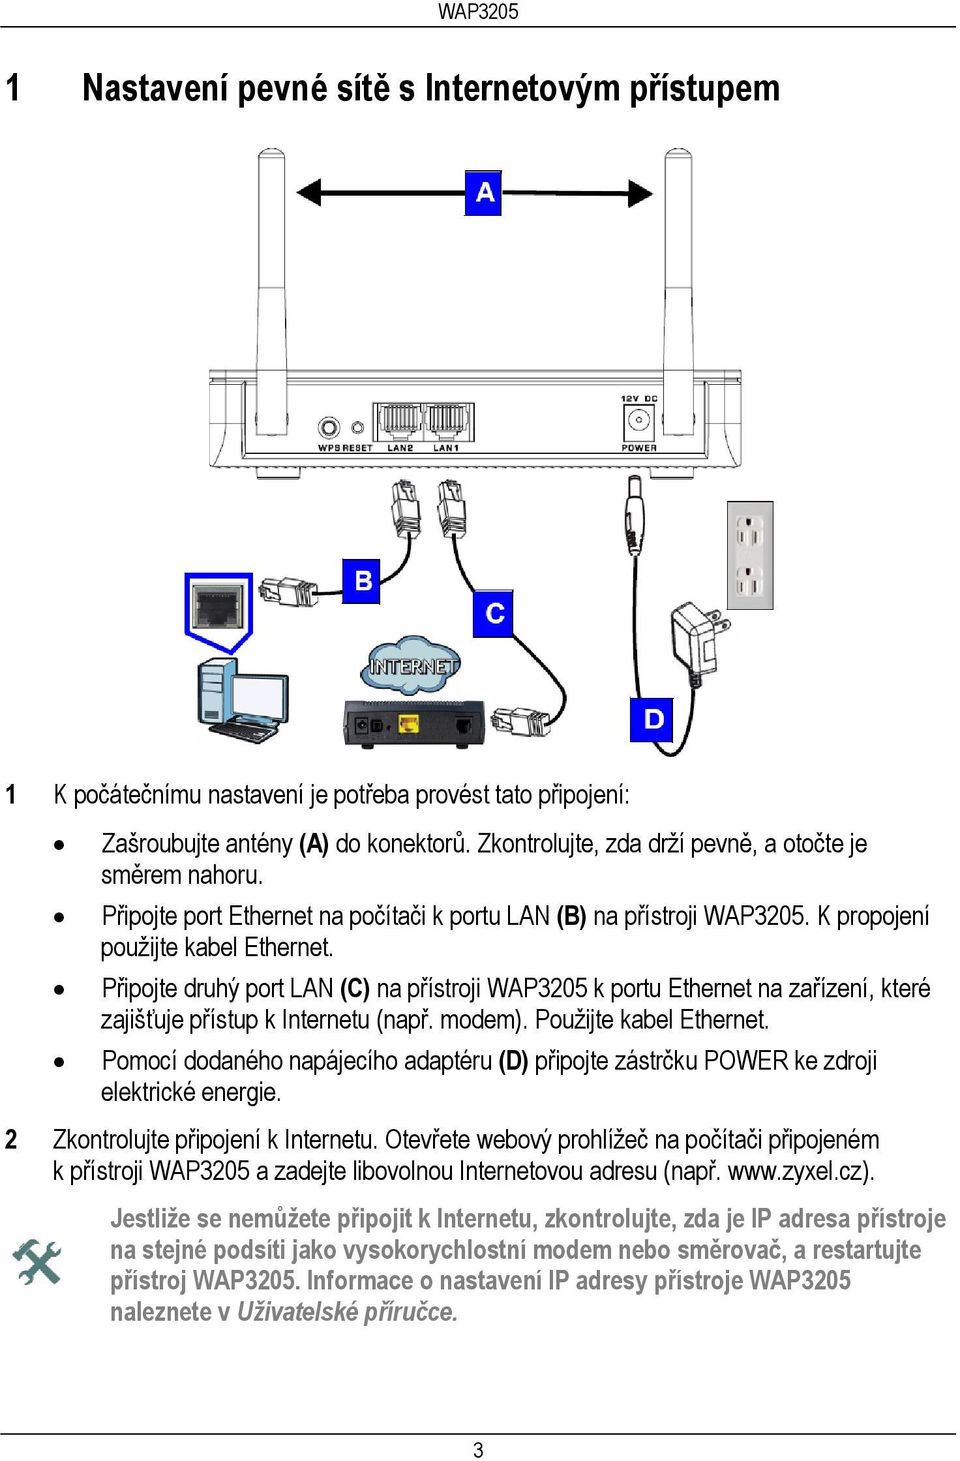 Připojte druhý port LAN (C) na přístroji WAP3205 k portu Ethernet na zařízení, které zajišťuje přístup k Internetu (např. modem). Použijte kabel Ethernet.